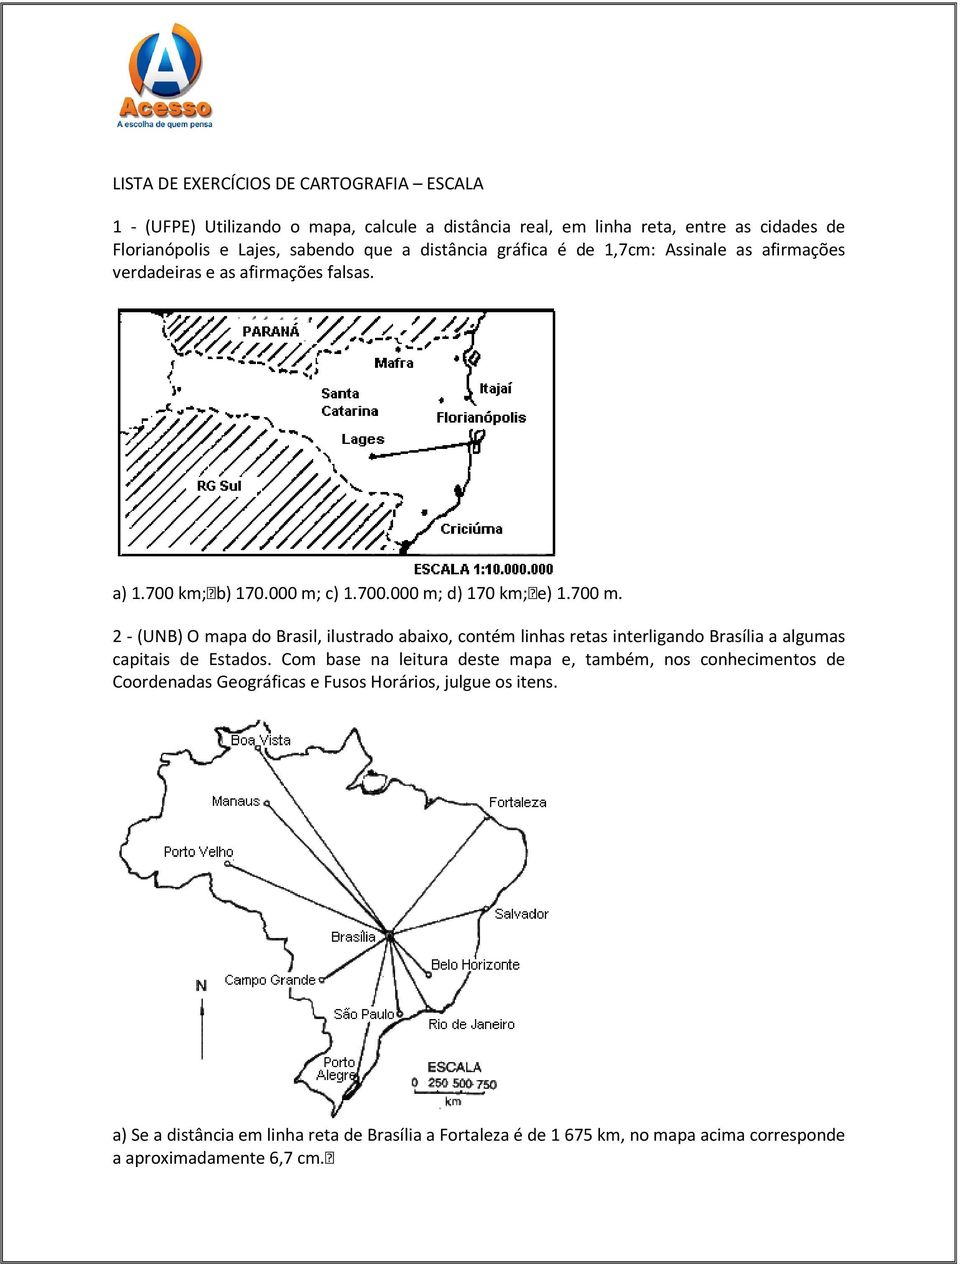 2 - (UNB) O mapa do Brasil, ilustrado abaixo, contém linhas retas interligando Brasília a algumas capitais de Estados.